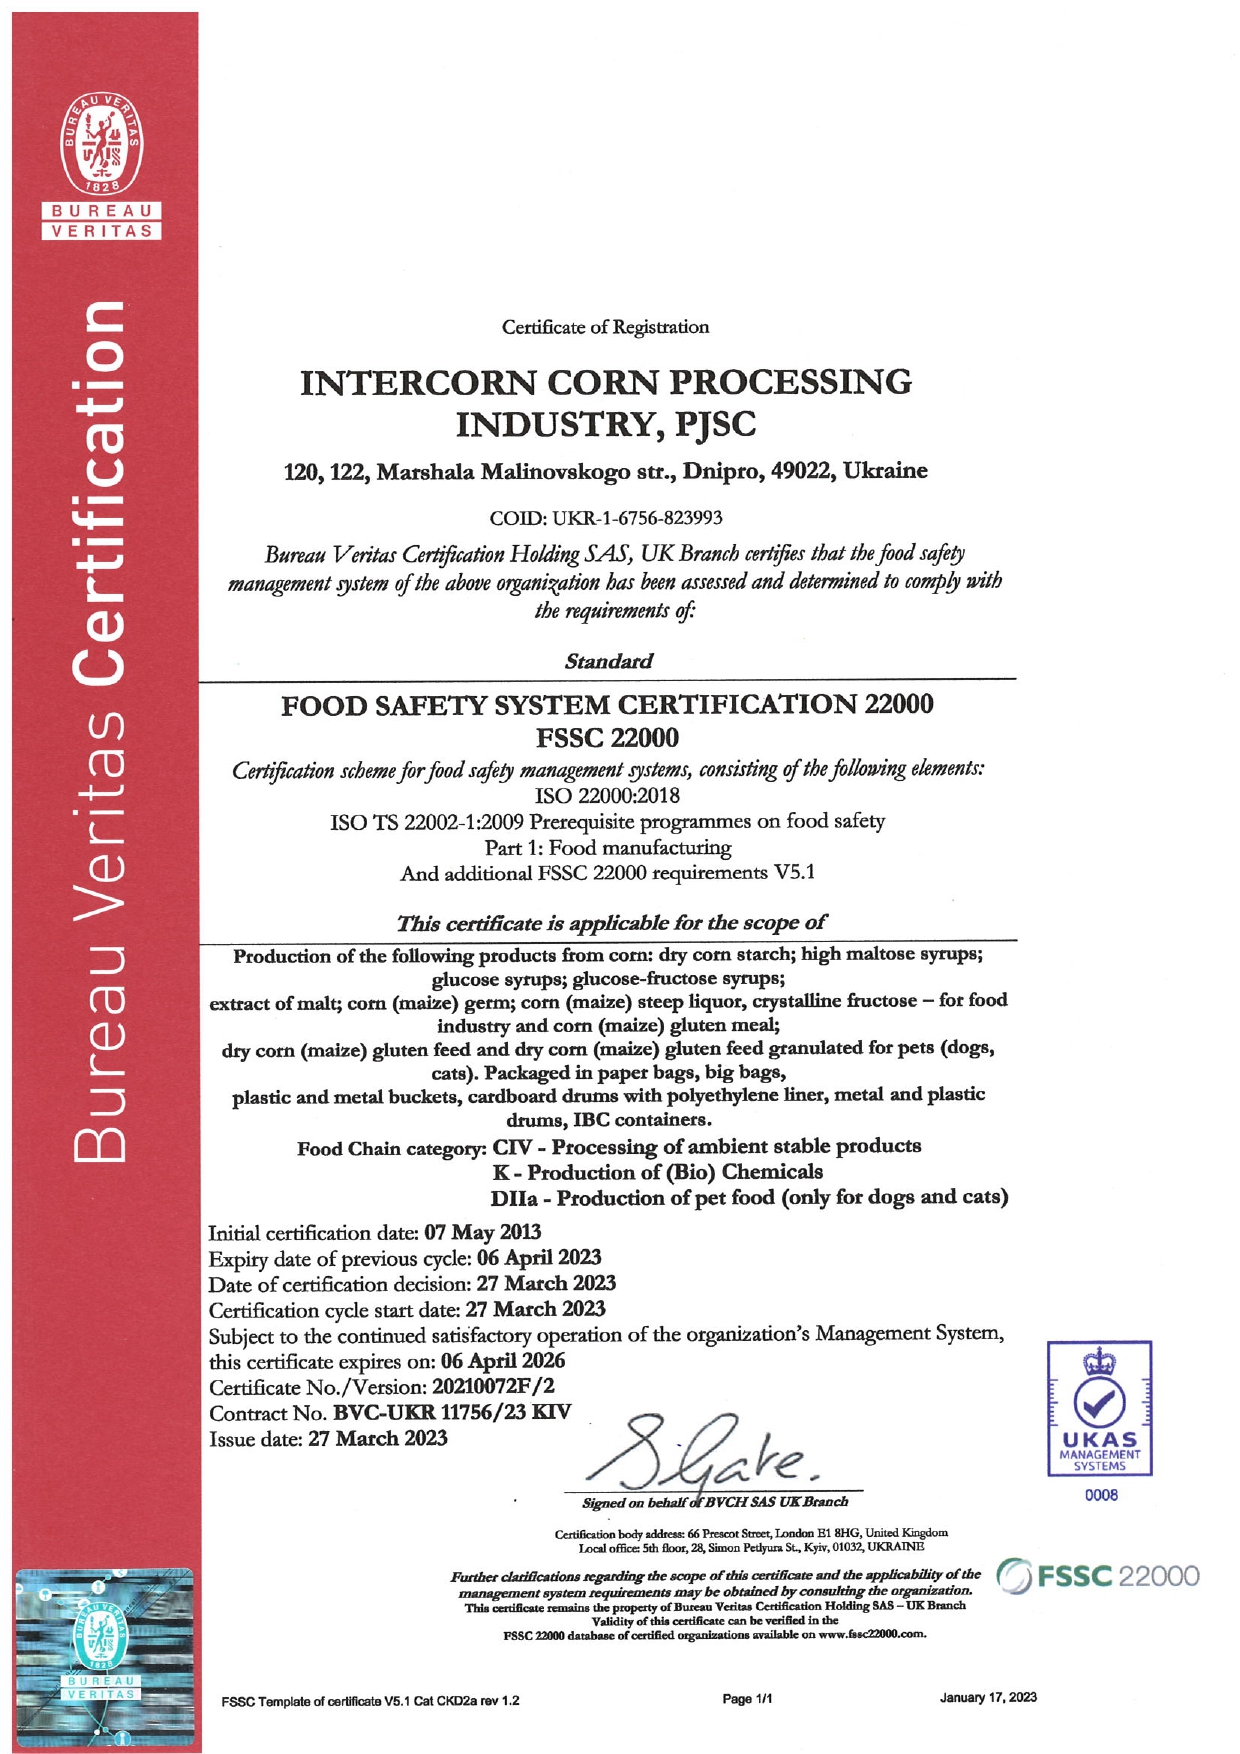 FSSC 22000 Intercorn Corn Processing Industry, PJSC